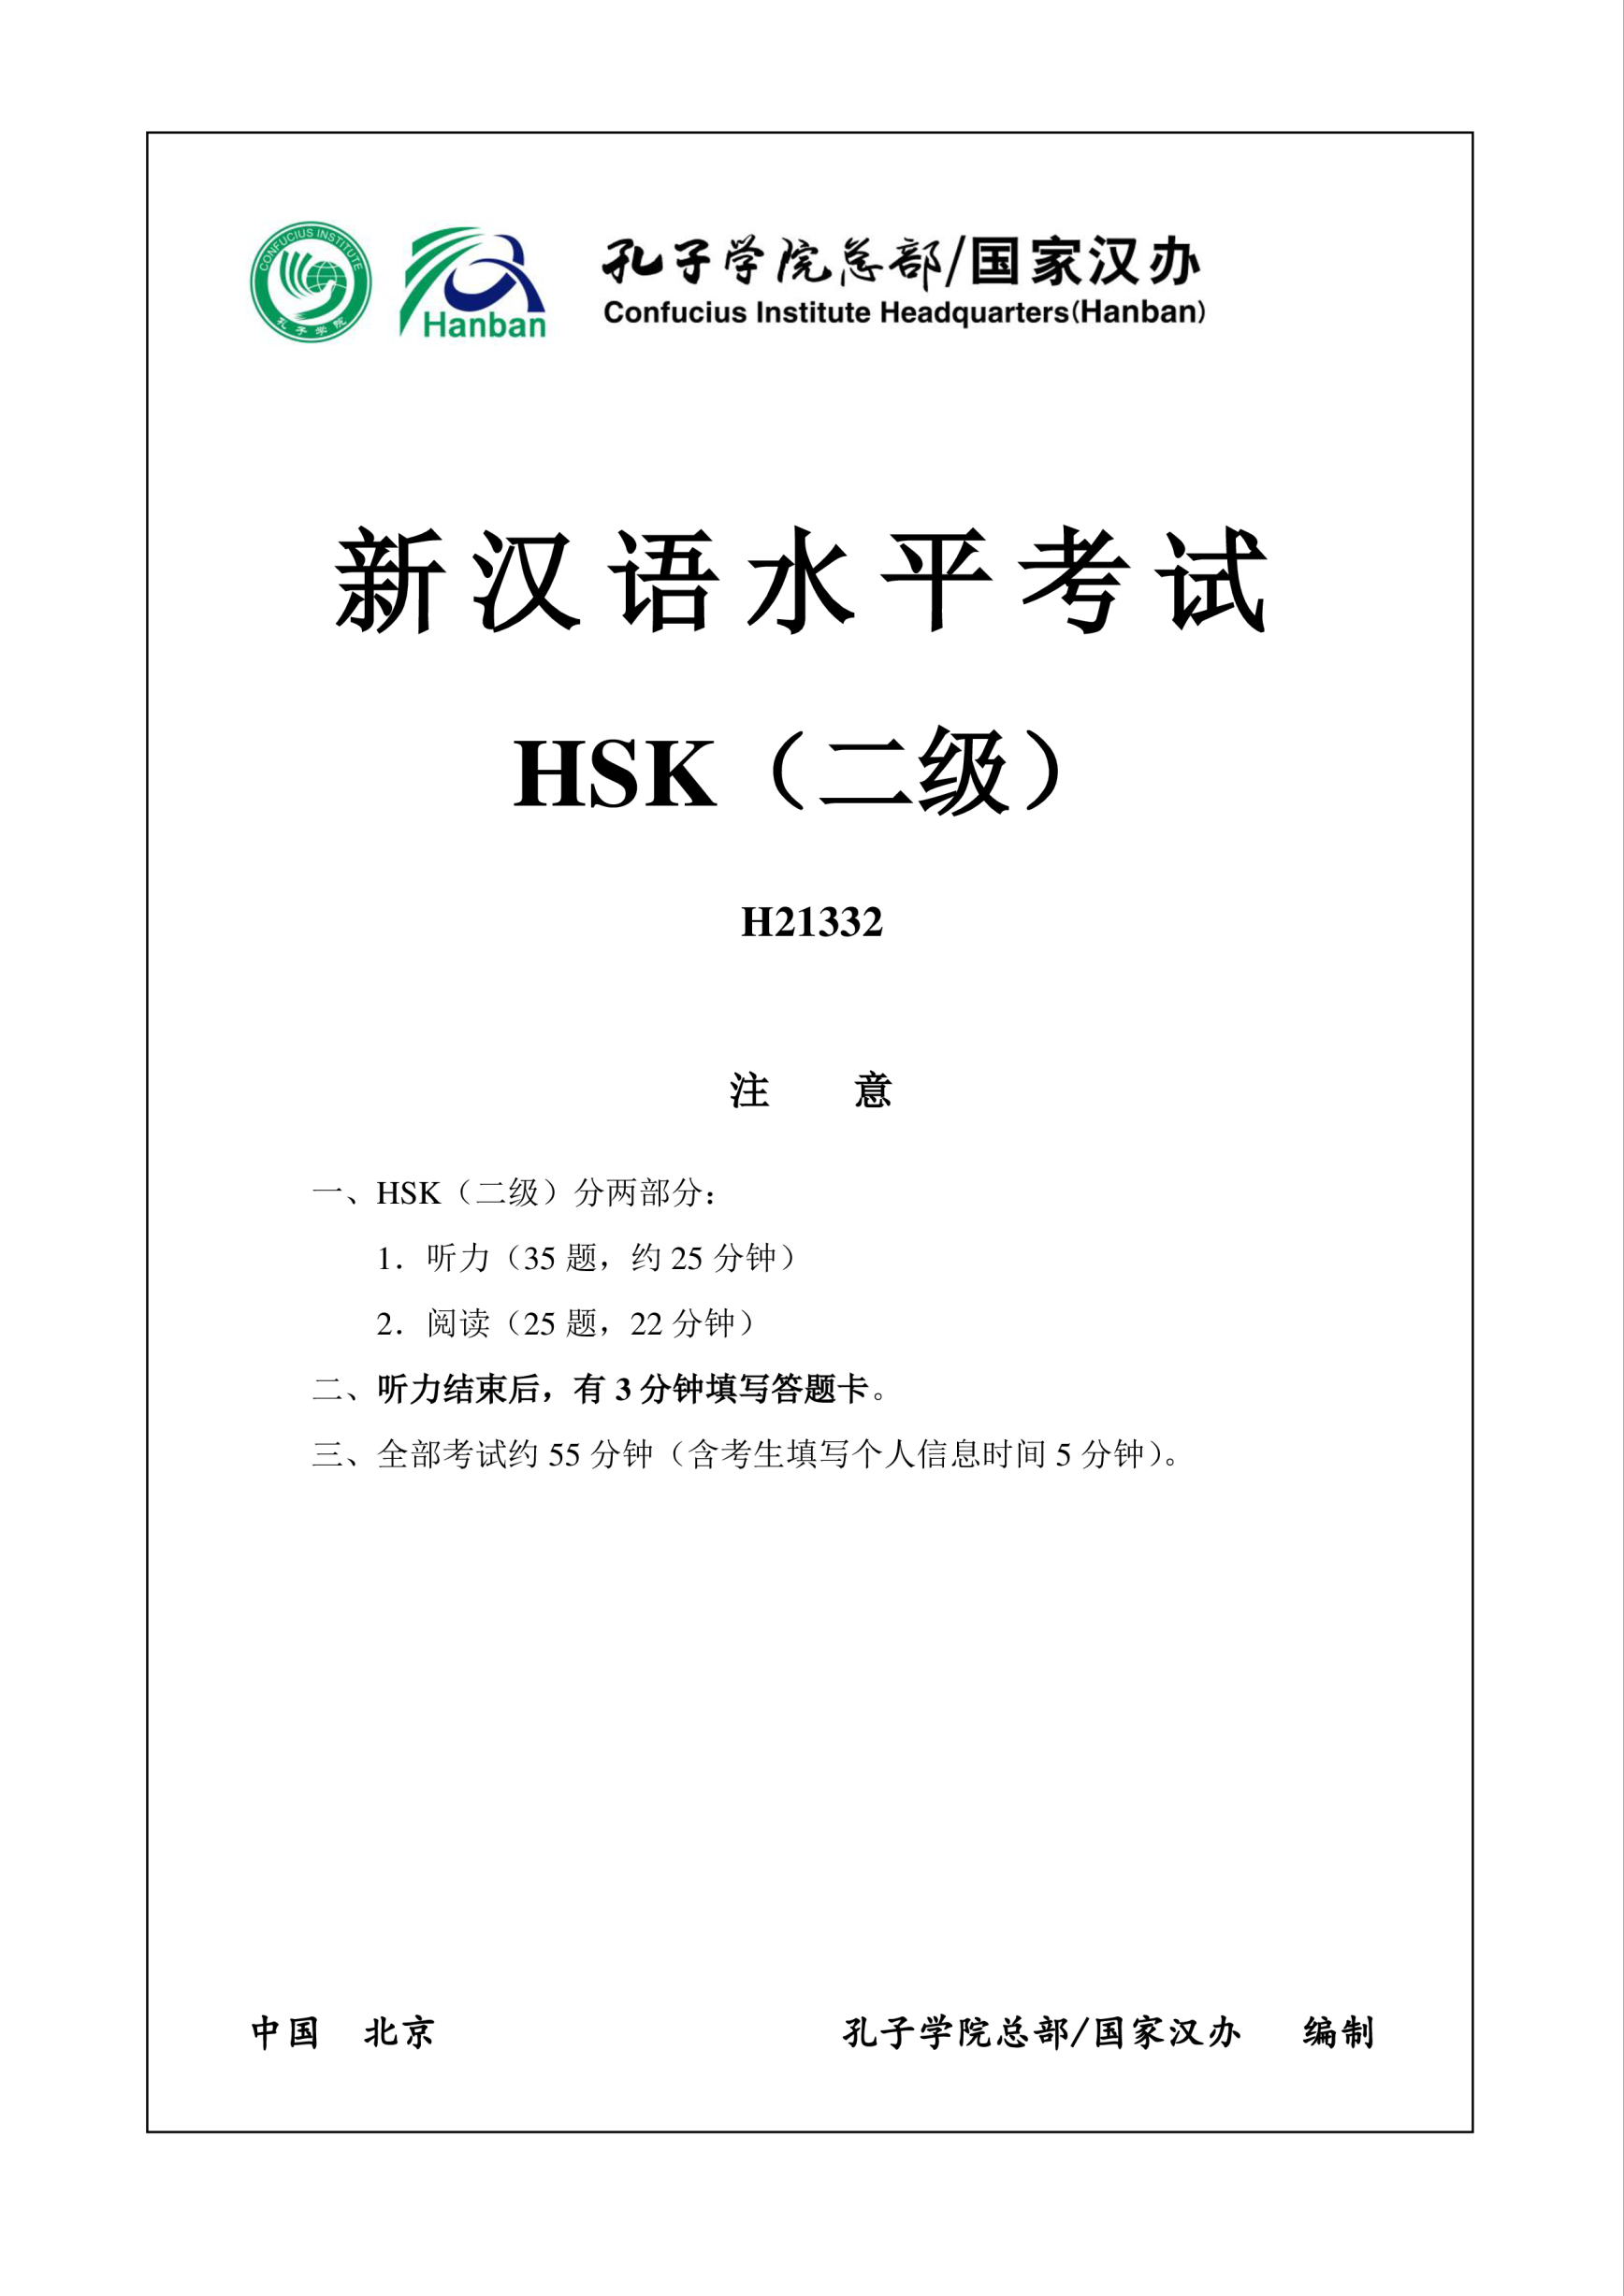 Vorschaubild der VorlageHSK2 Chinese Exam including Answers # HSK2 H21332